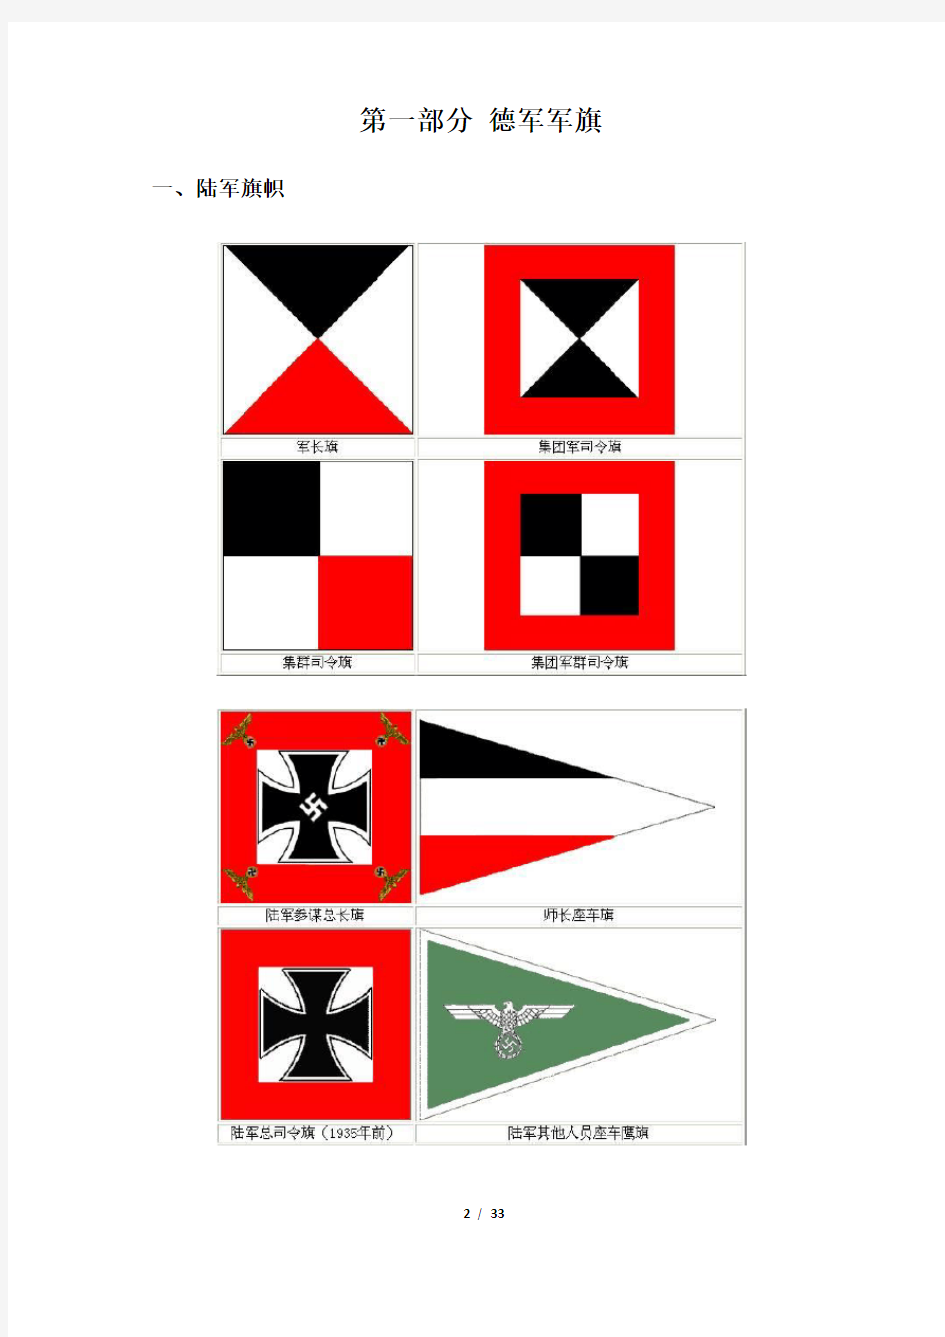 德军军旗、兵种色和标志一览